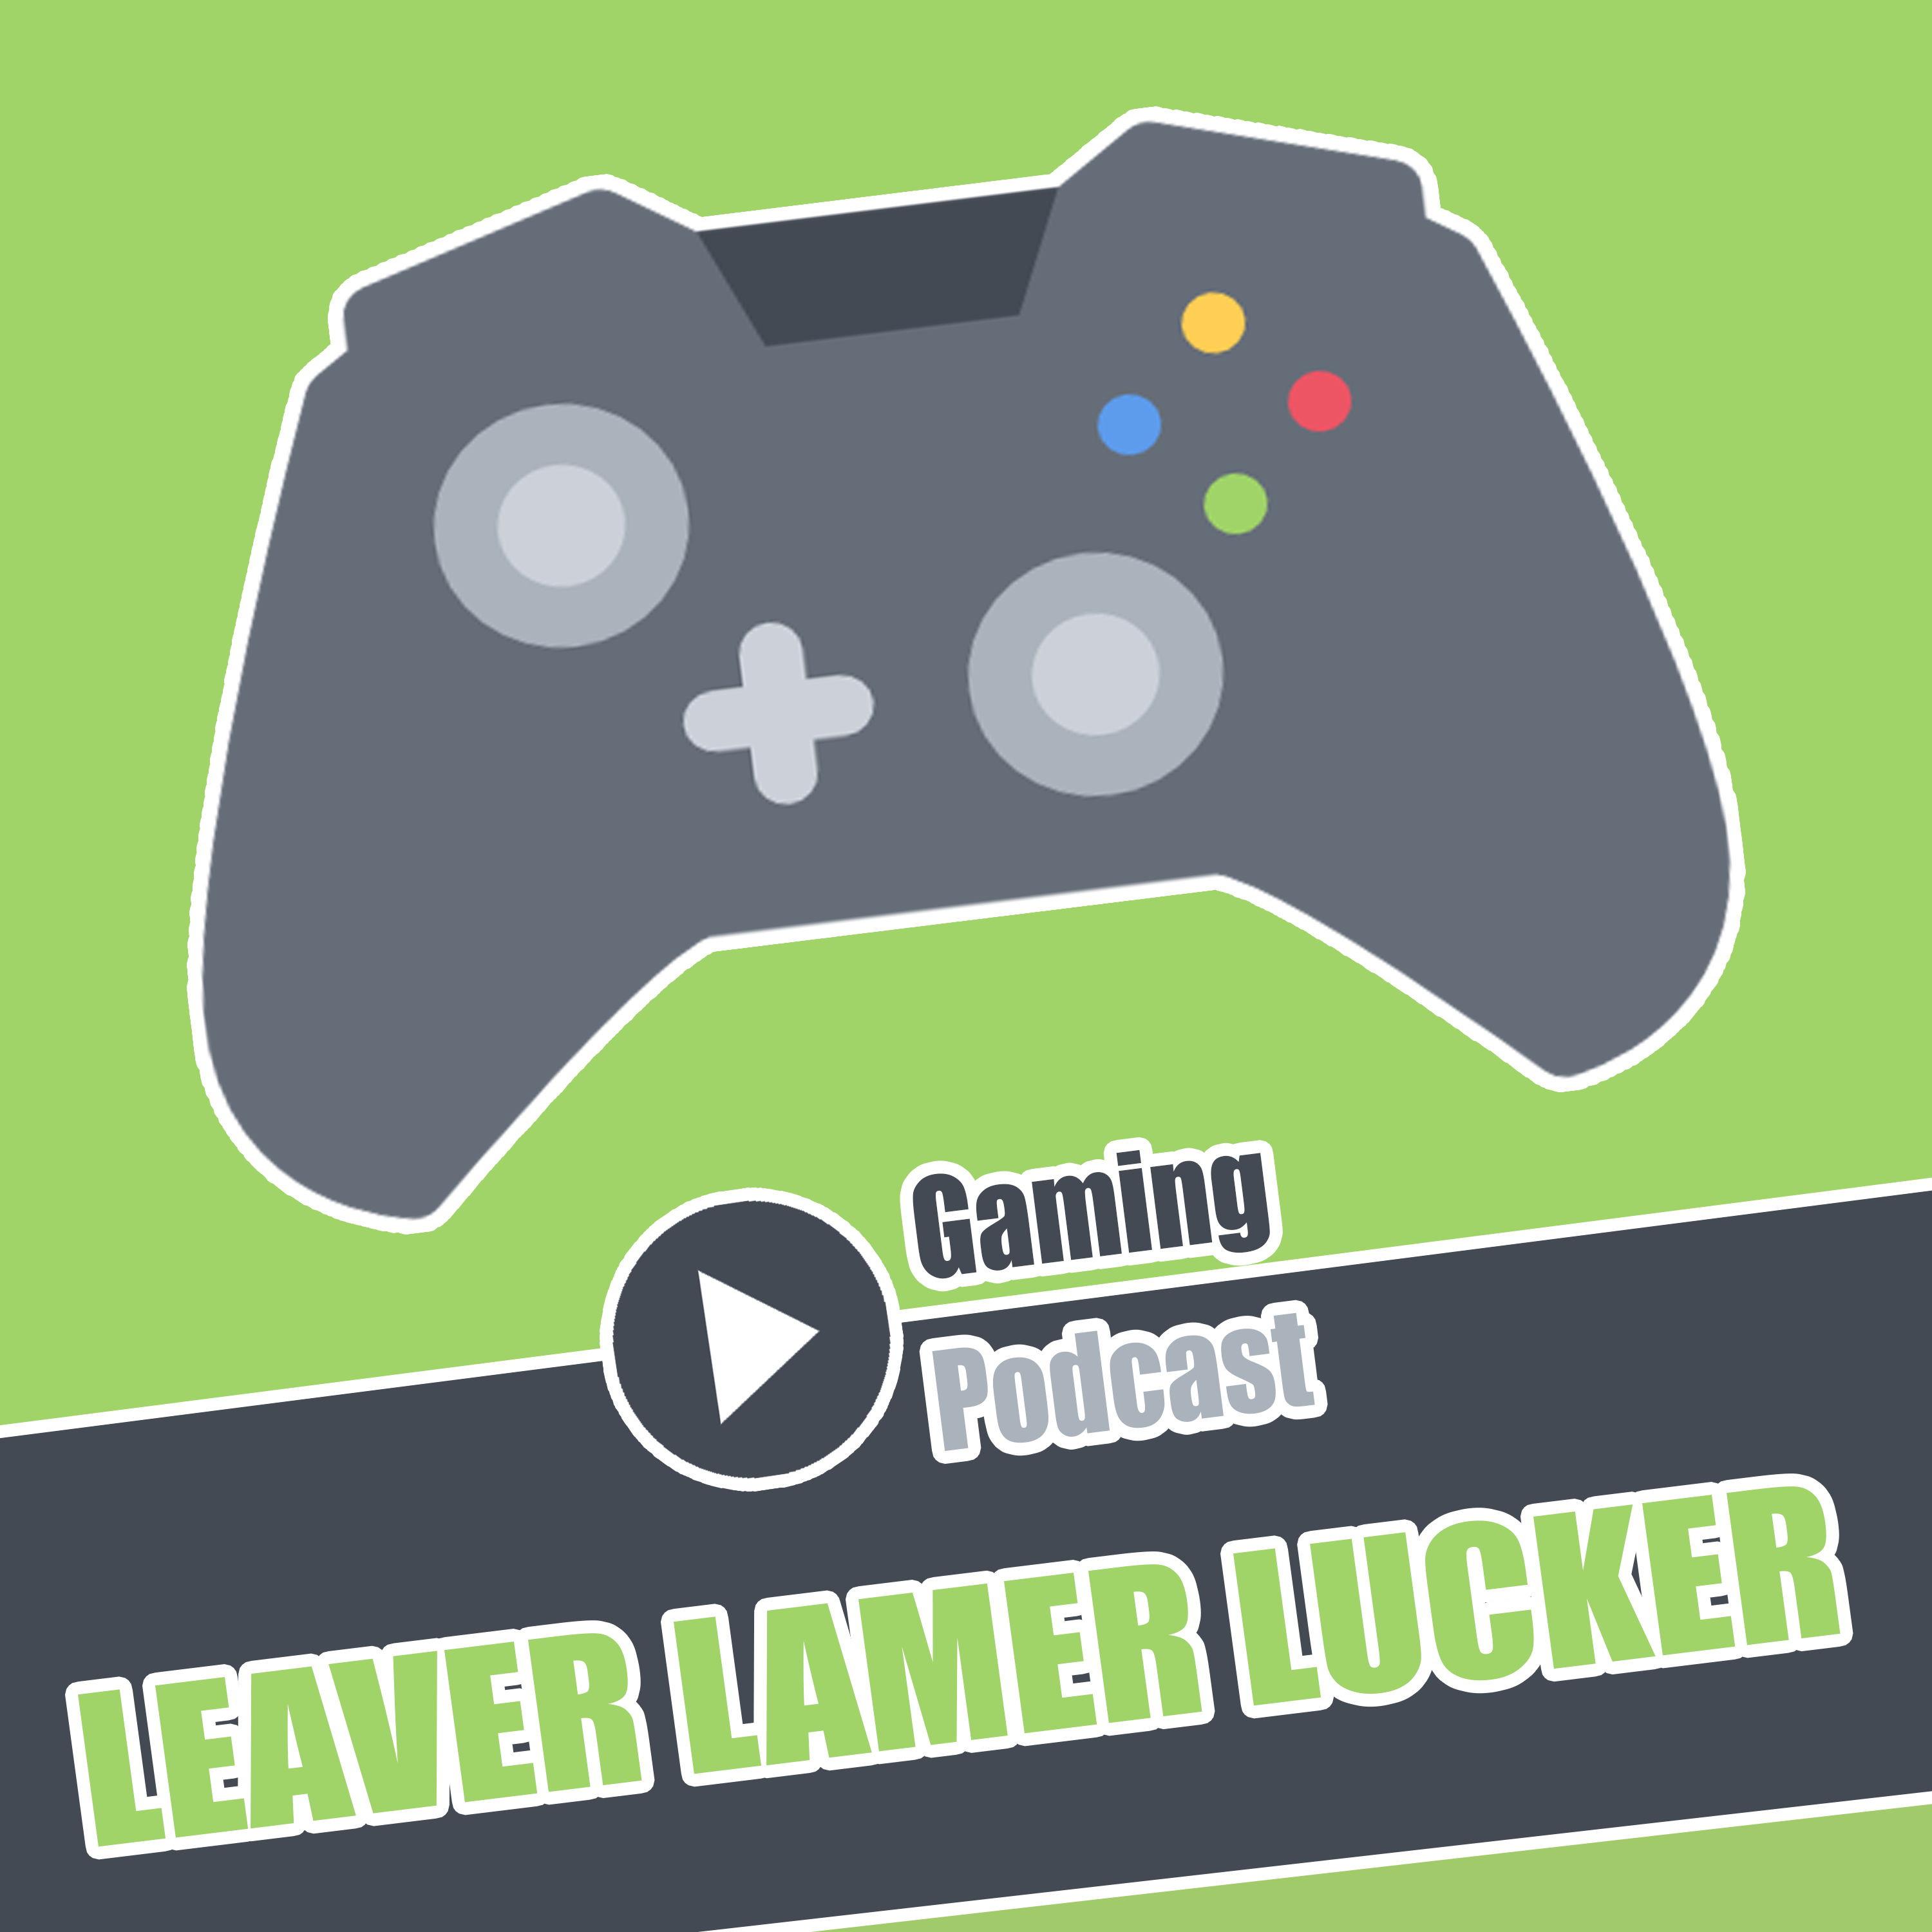 Leaver Lamer Lucker